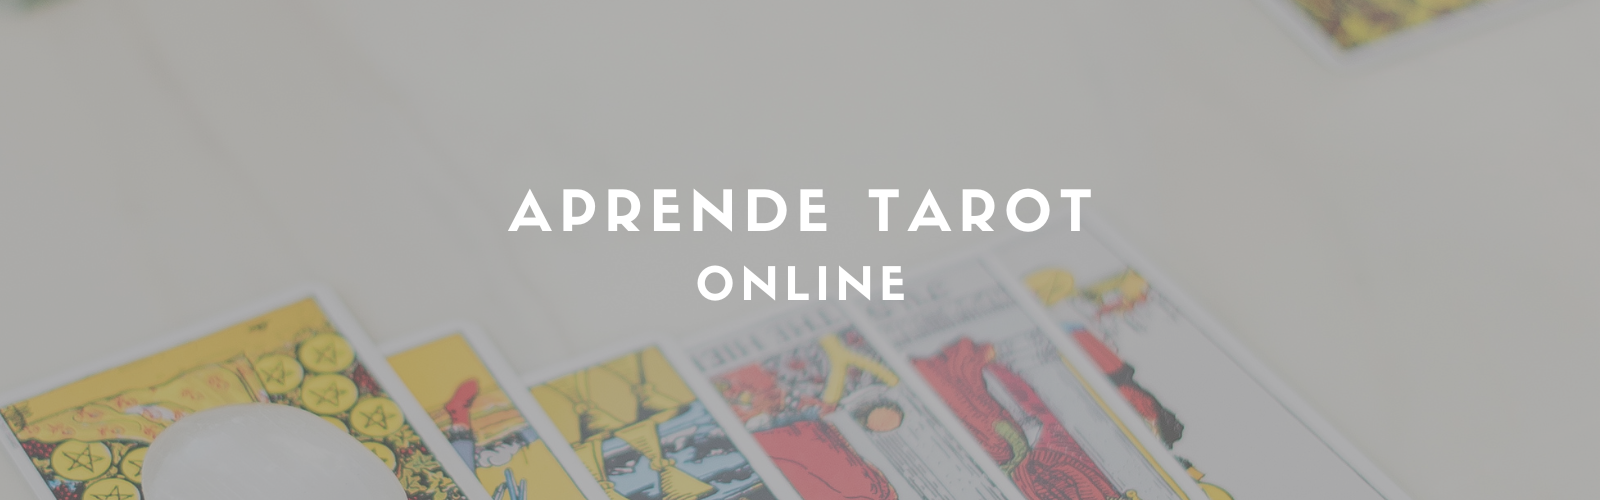 curso de tarot online